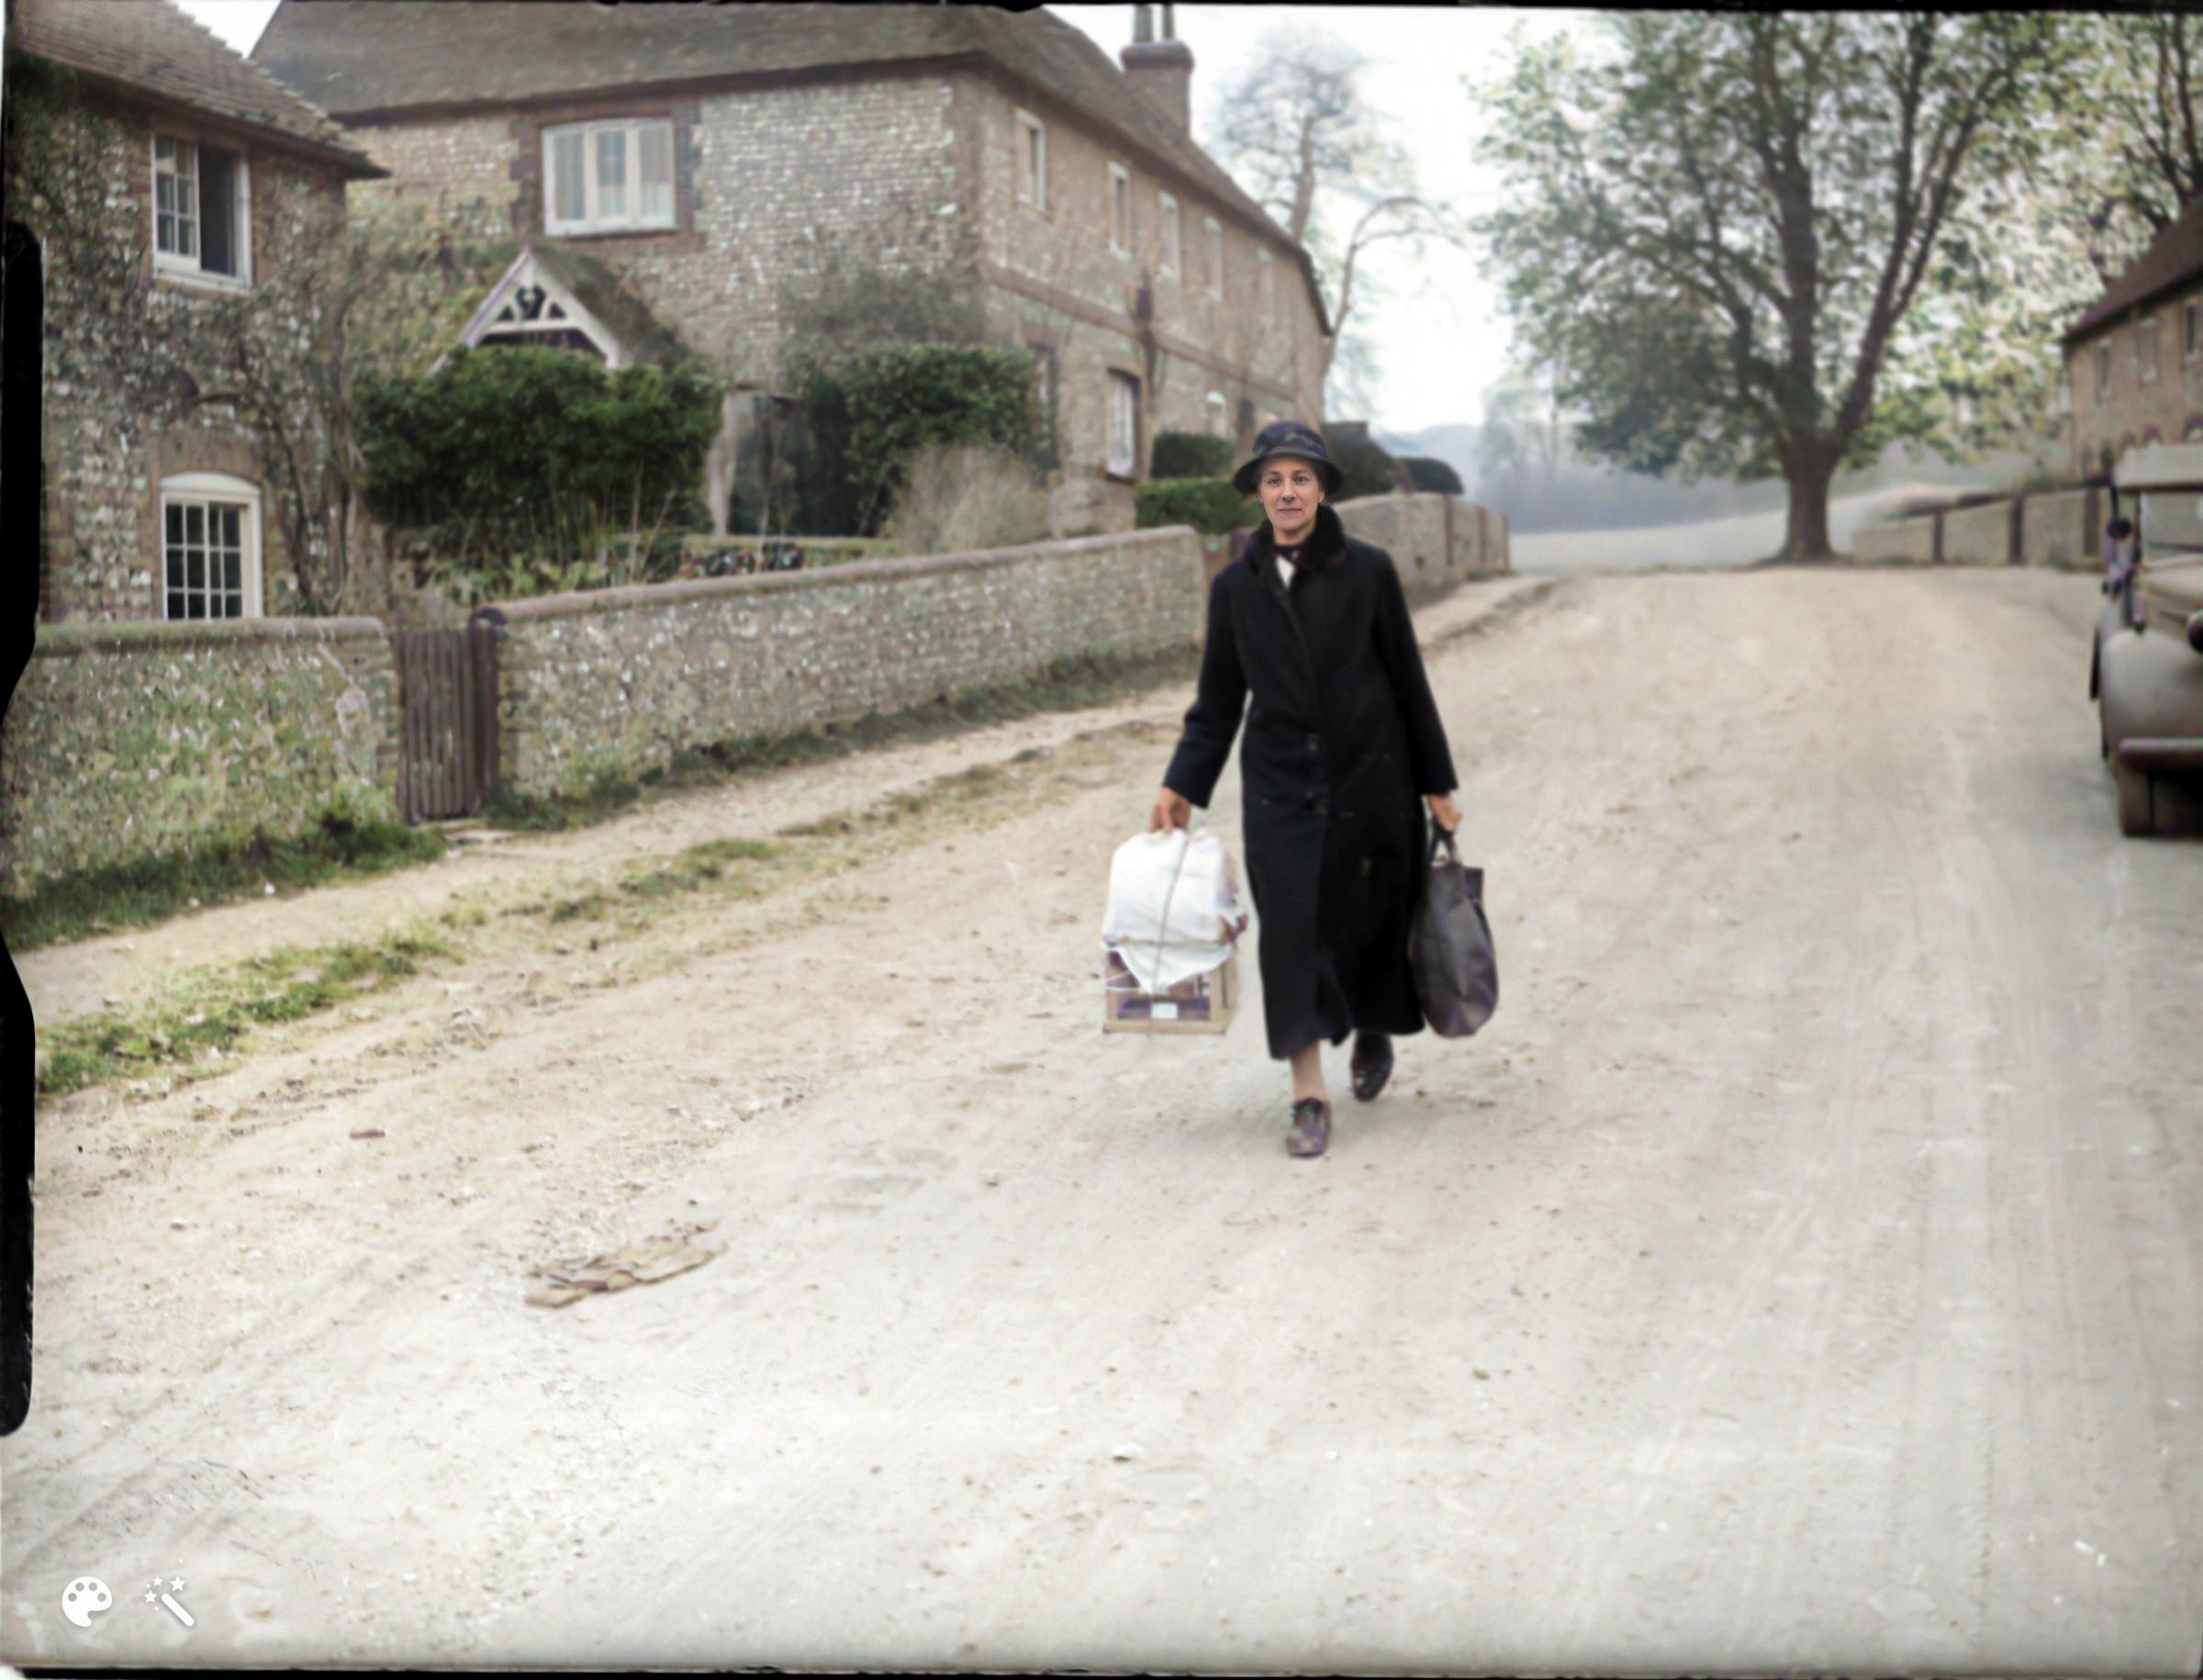 Strolling through Stanmer village in around 1942